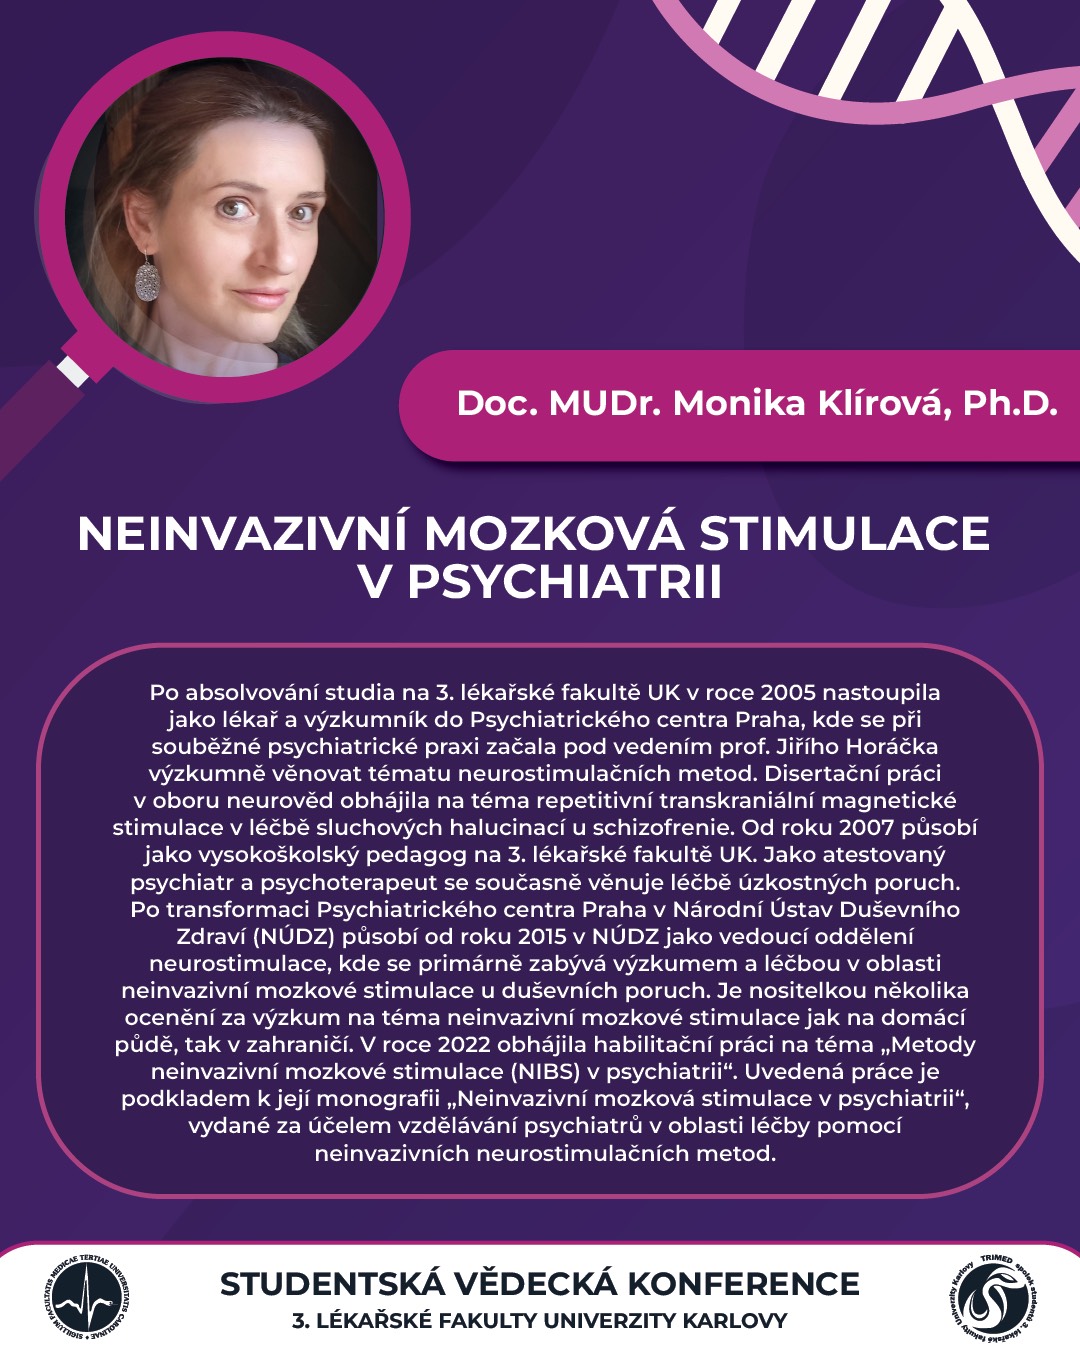 Doc. MUDr. Monika Klírová, Ph.D.